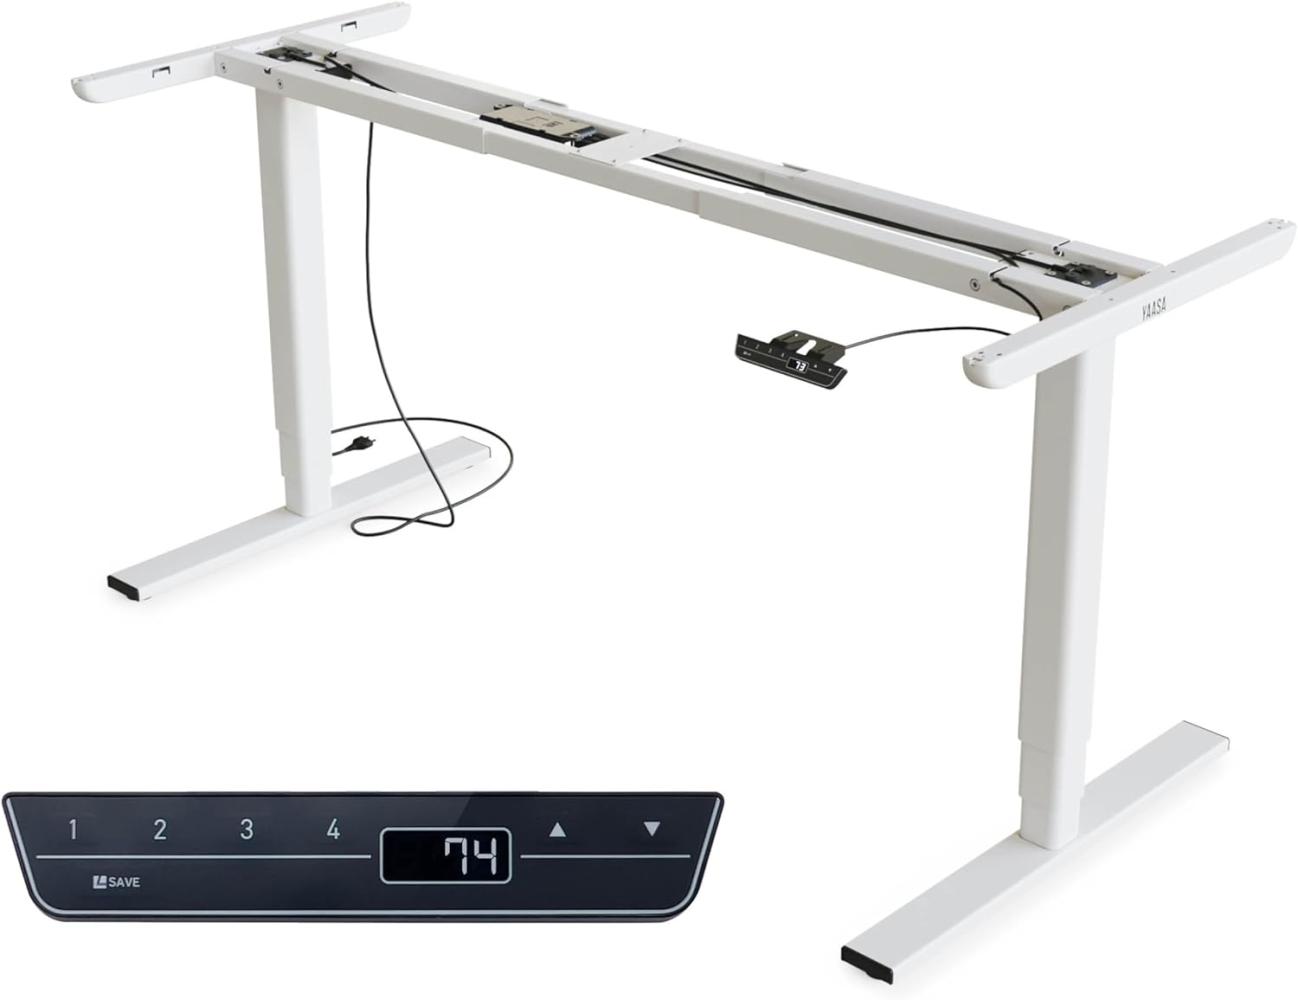 Yaasa Frame AMZ Tischgestell Höhenverstellbar mit Memory-Funktion, Elektrisch Höhenverstellbares Schreibtischgestell mit Kollisionssensor, Ausziehbares Tischgestell in Weiß Bild 1